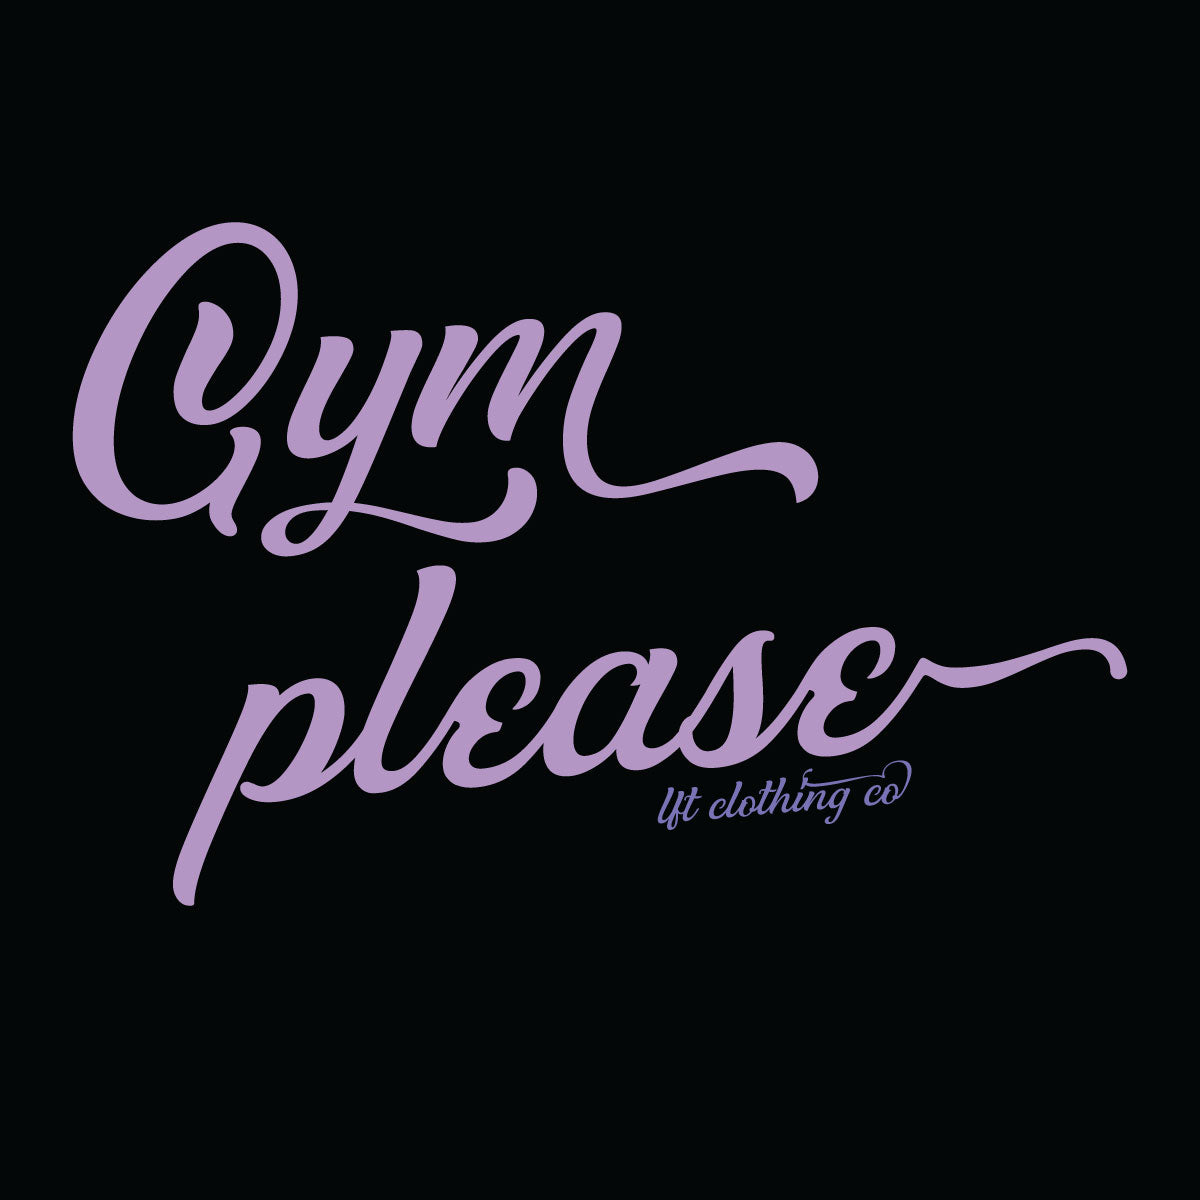 Gym Please Women’s Festival Muscle Tank